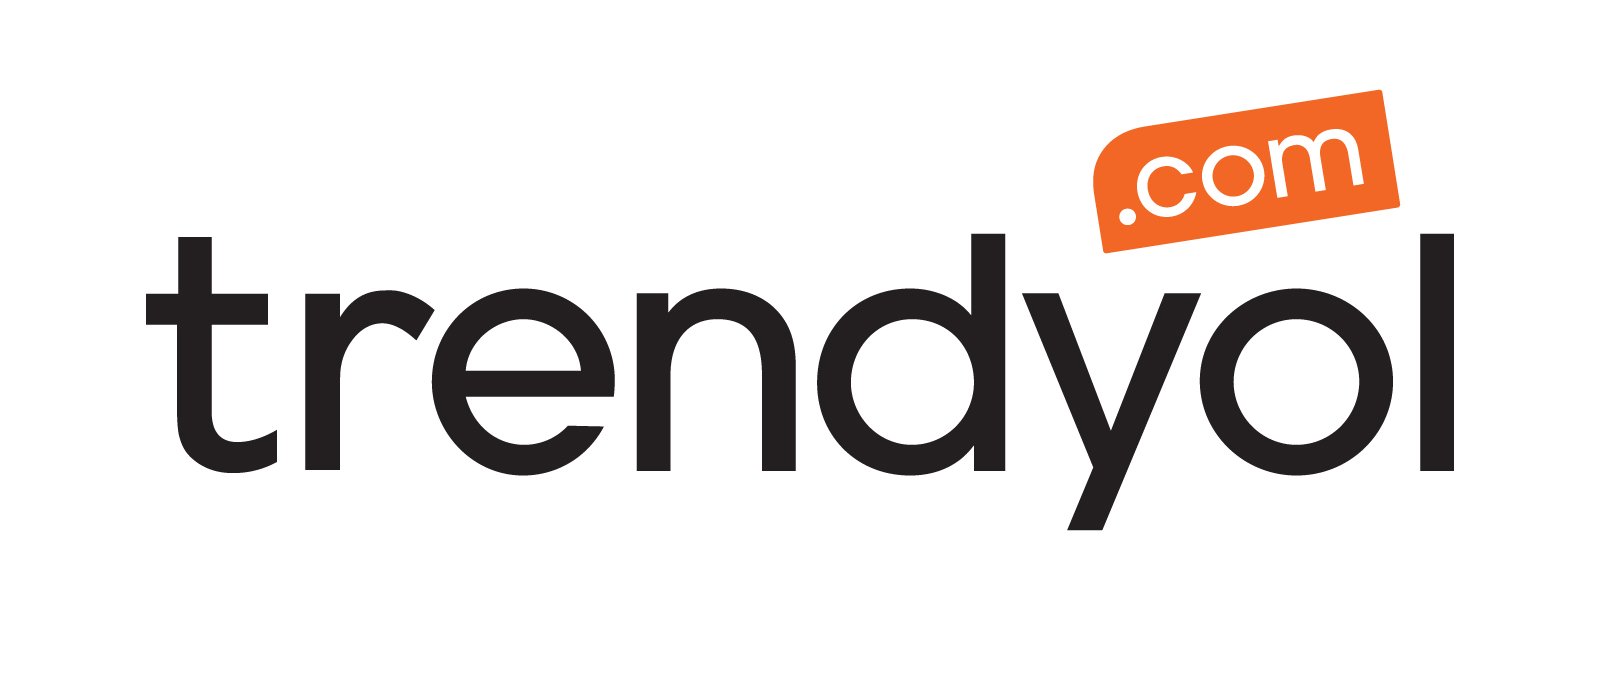 trendyol logo